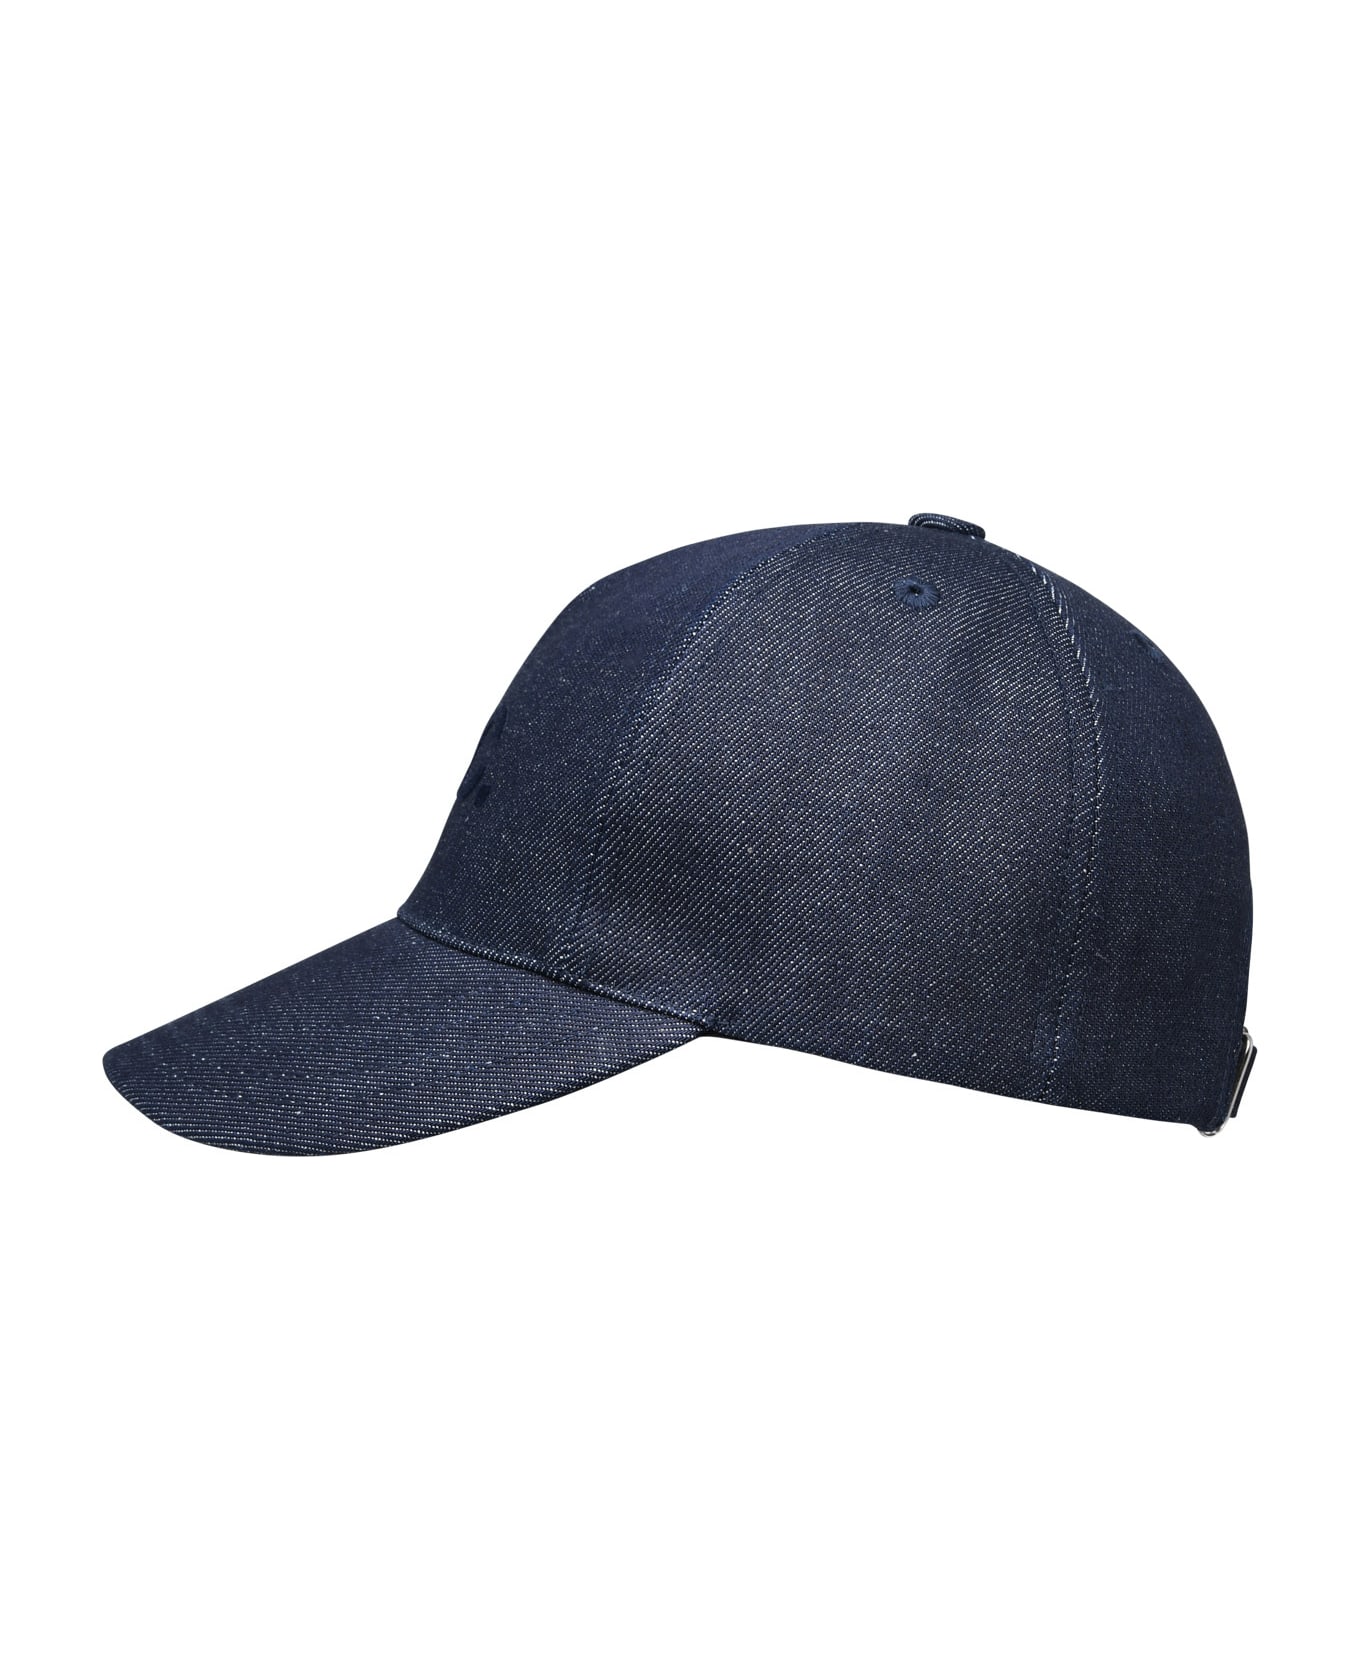 A.P.C. Blue Cotton Eden Hat - Blue 帽子